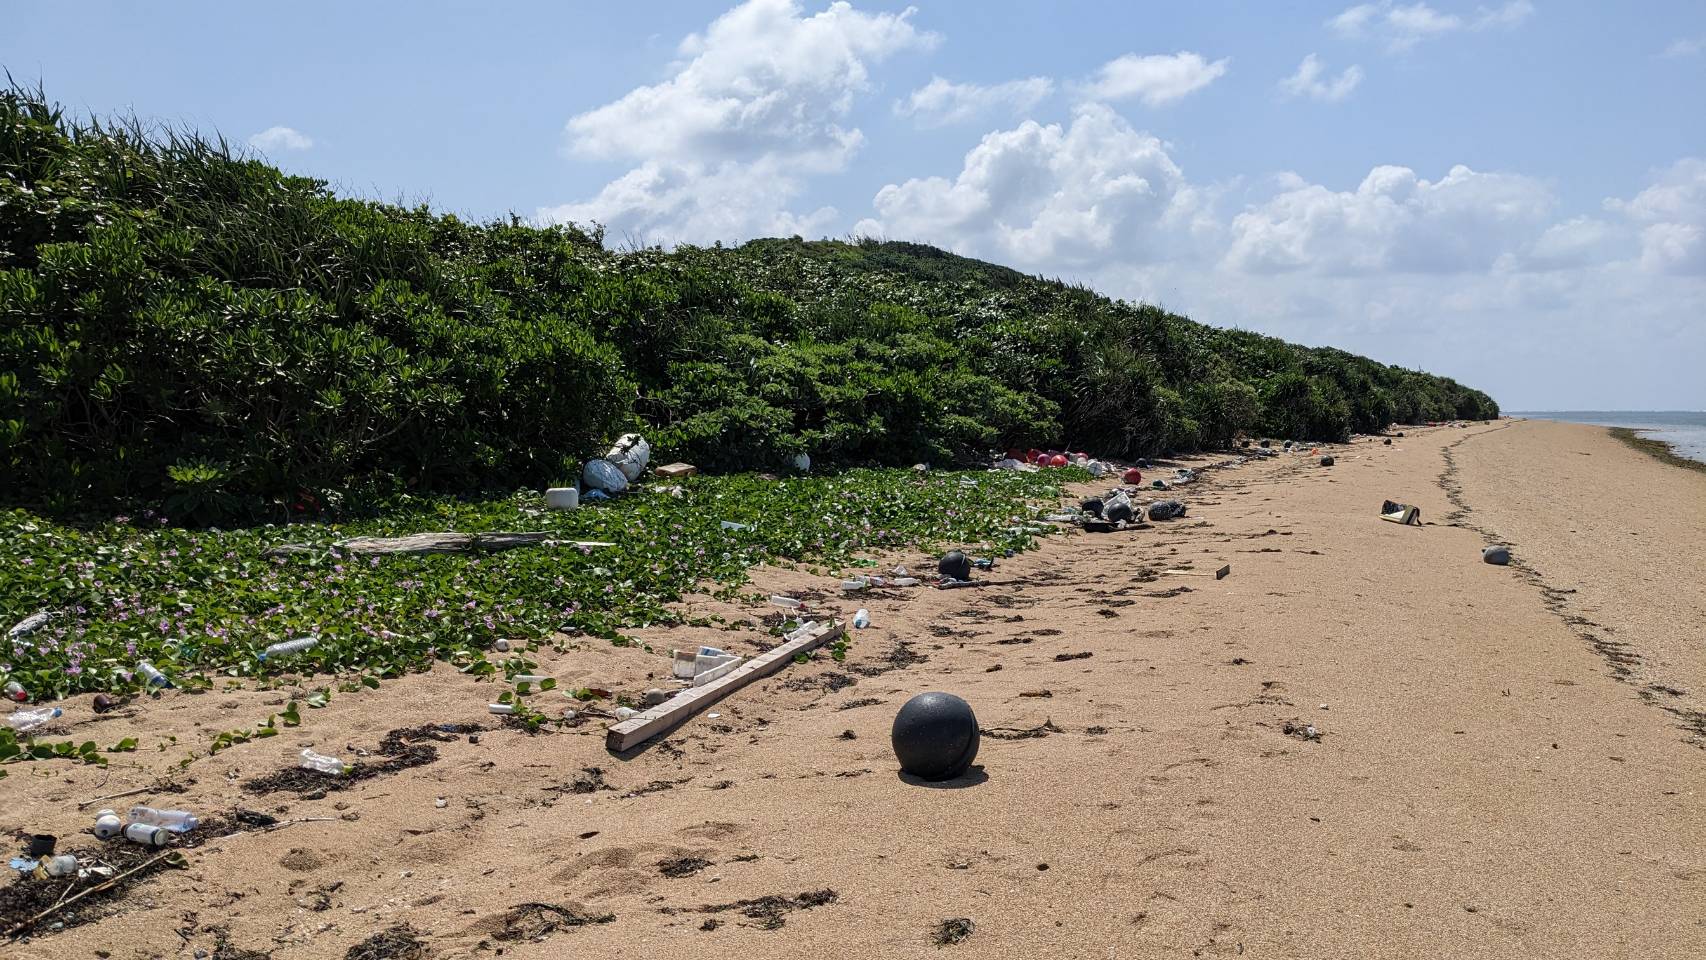 ビーチに散乱した漂着ゴミ問題